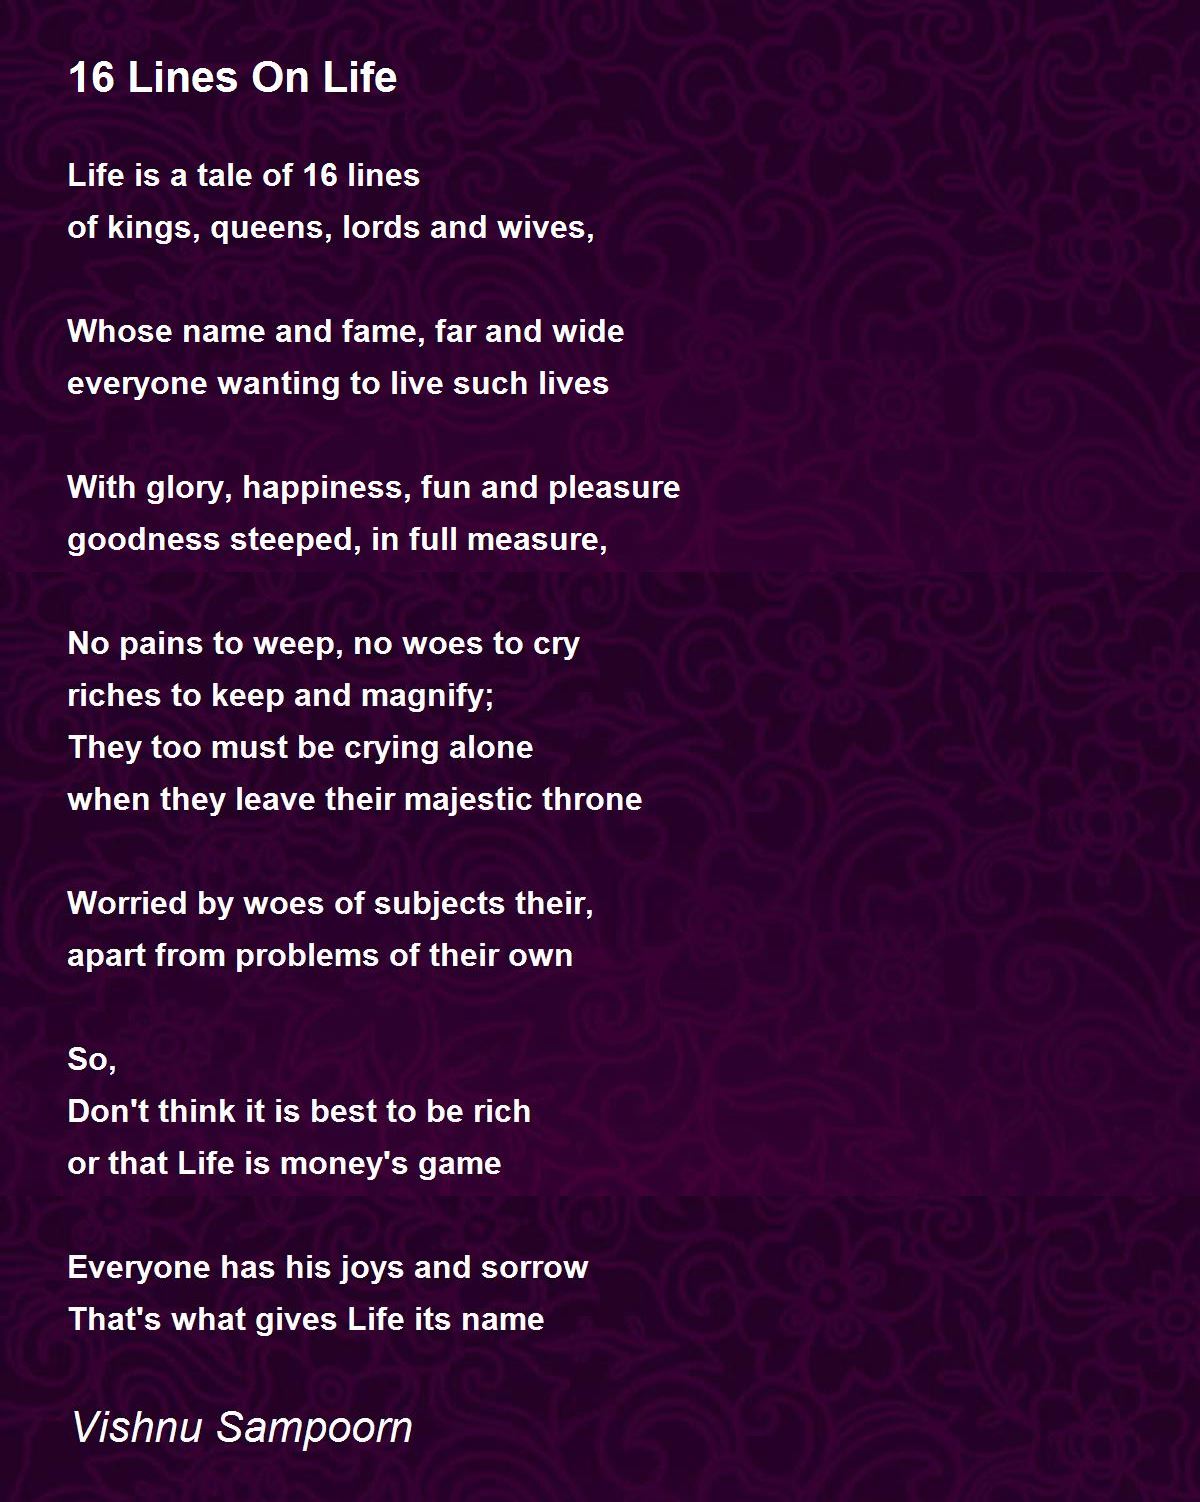 16 Lines On Life Poem By Vishnu Sampoorn